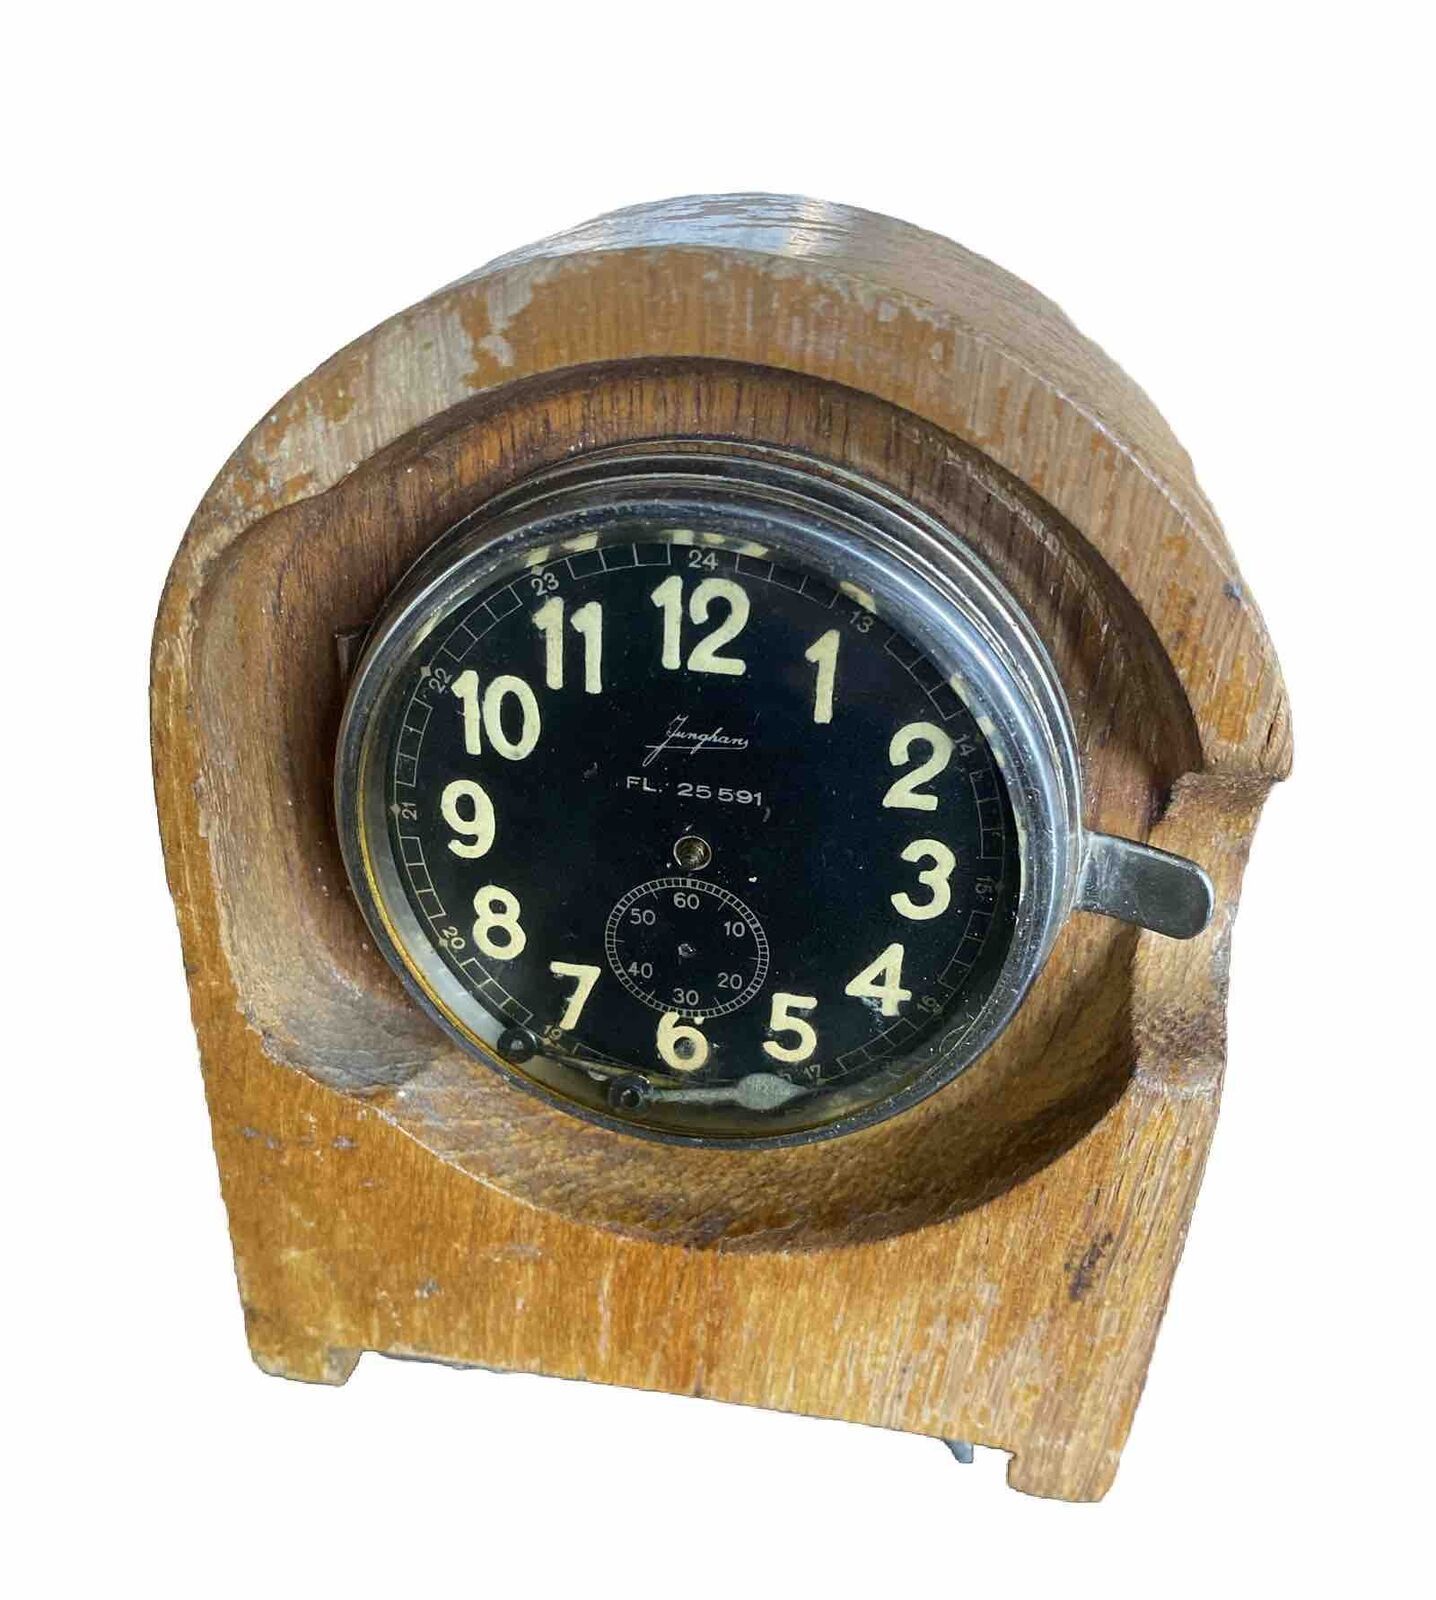 Luftwaffe Junghans WW2 aircraft duty clock FL25591  RARE 1937 Needs Restoration